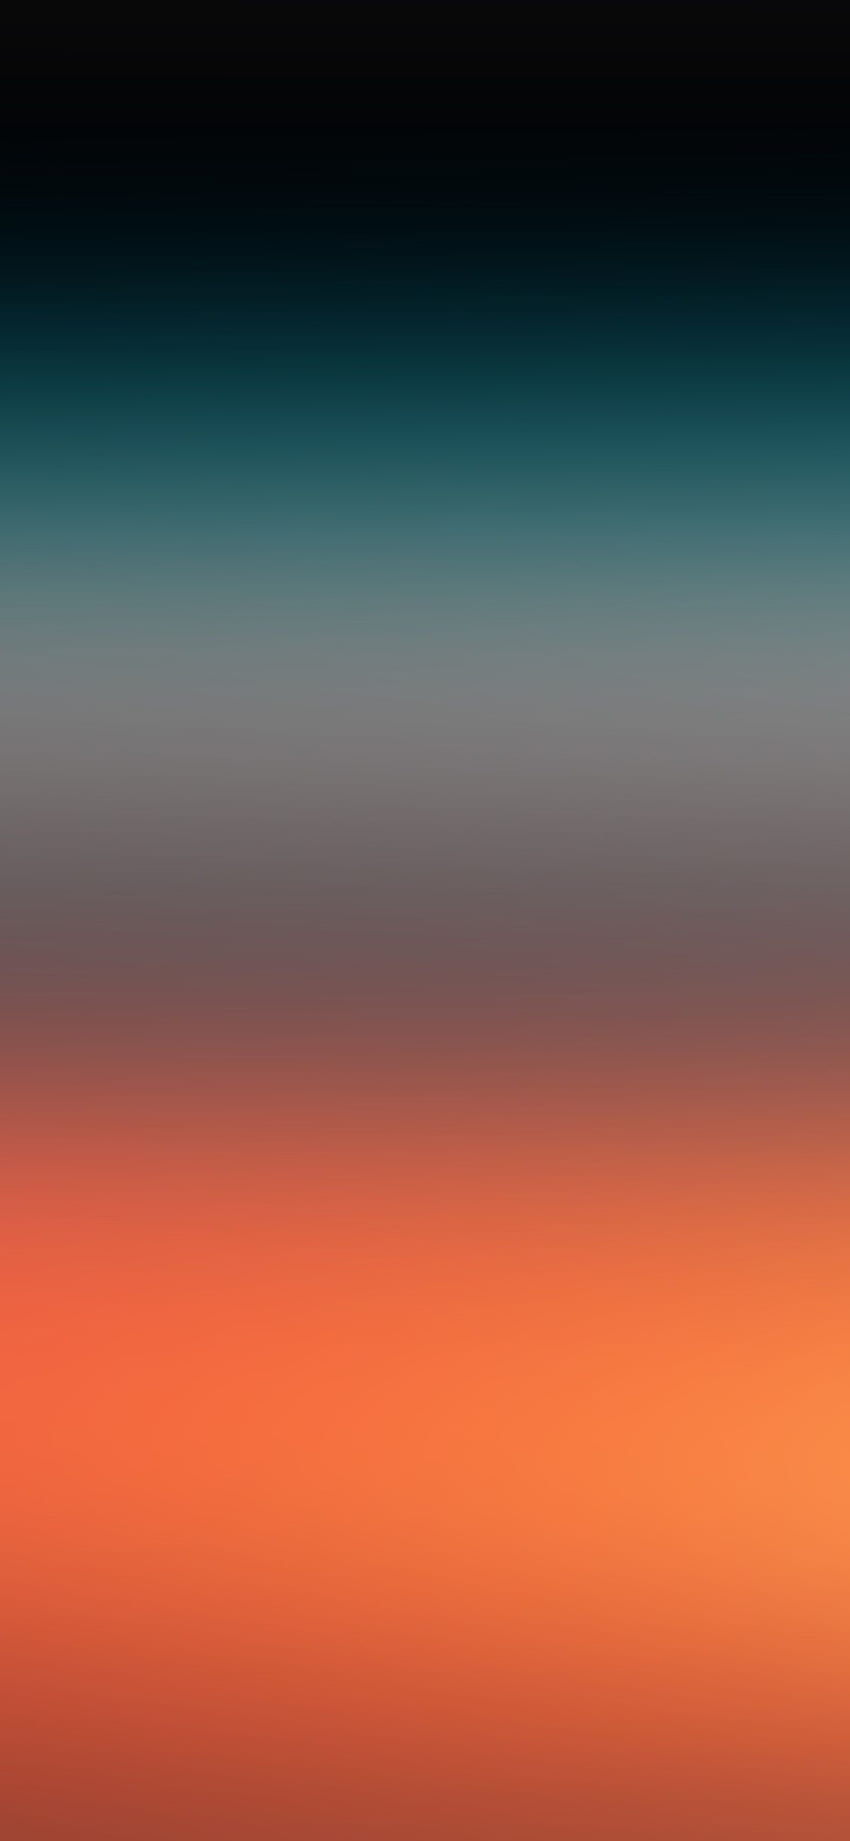 IPhone X . red green sunset gradation blur HD phone wallpaper | Pxfuel